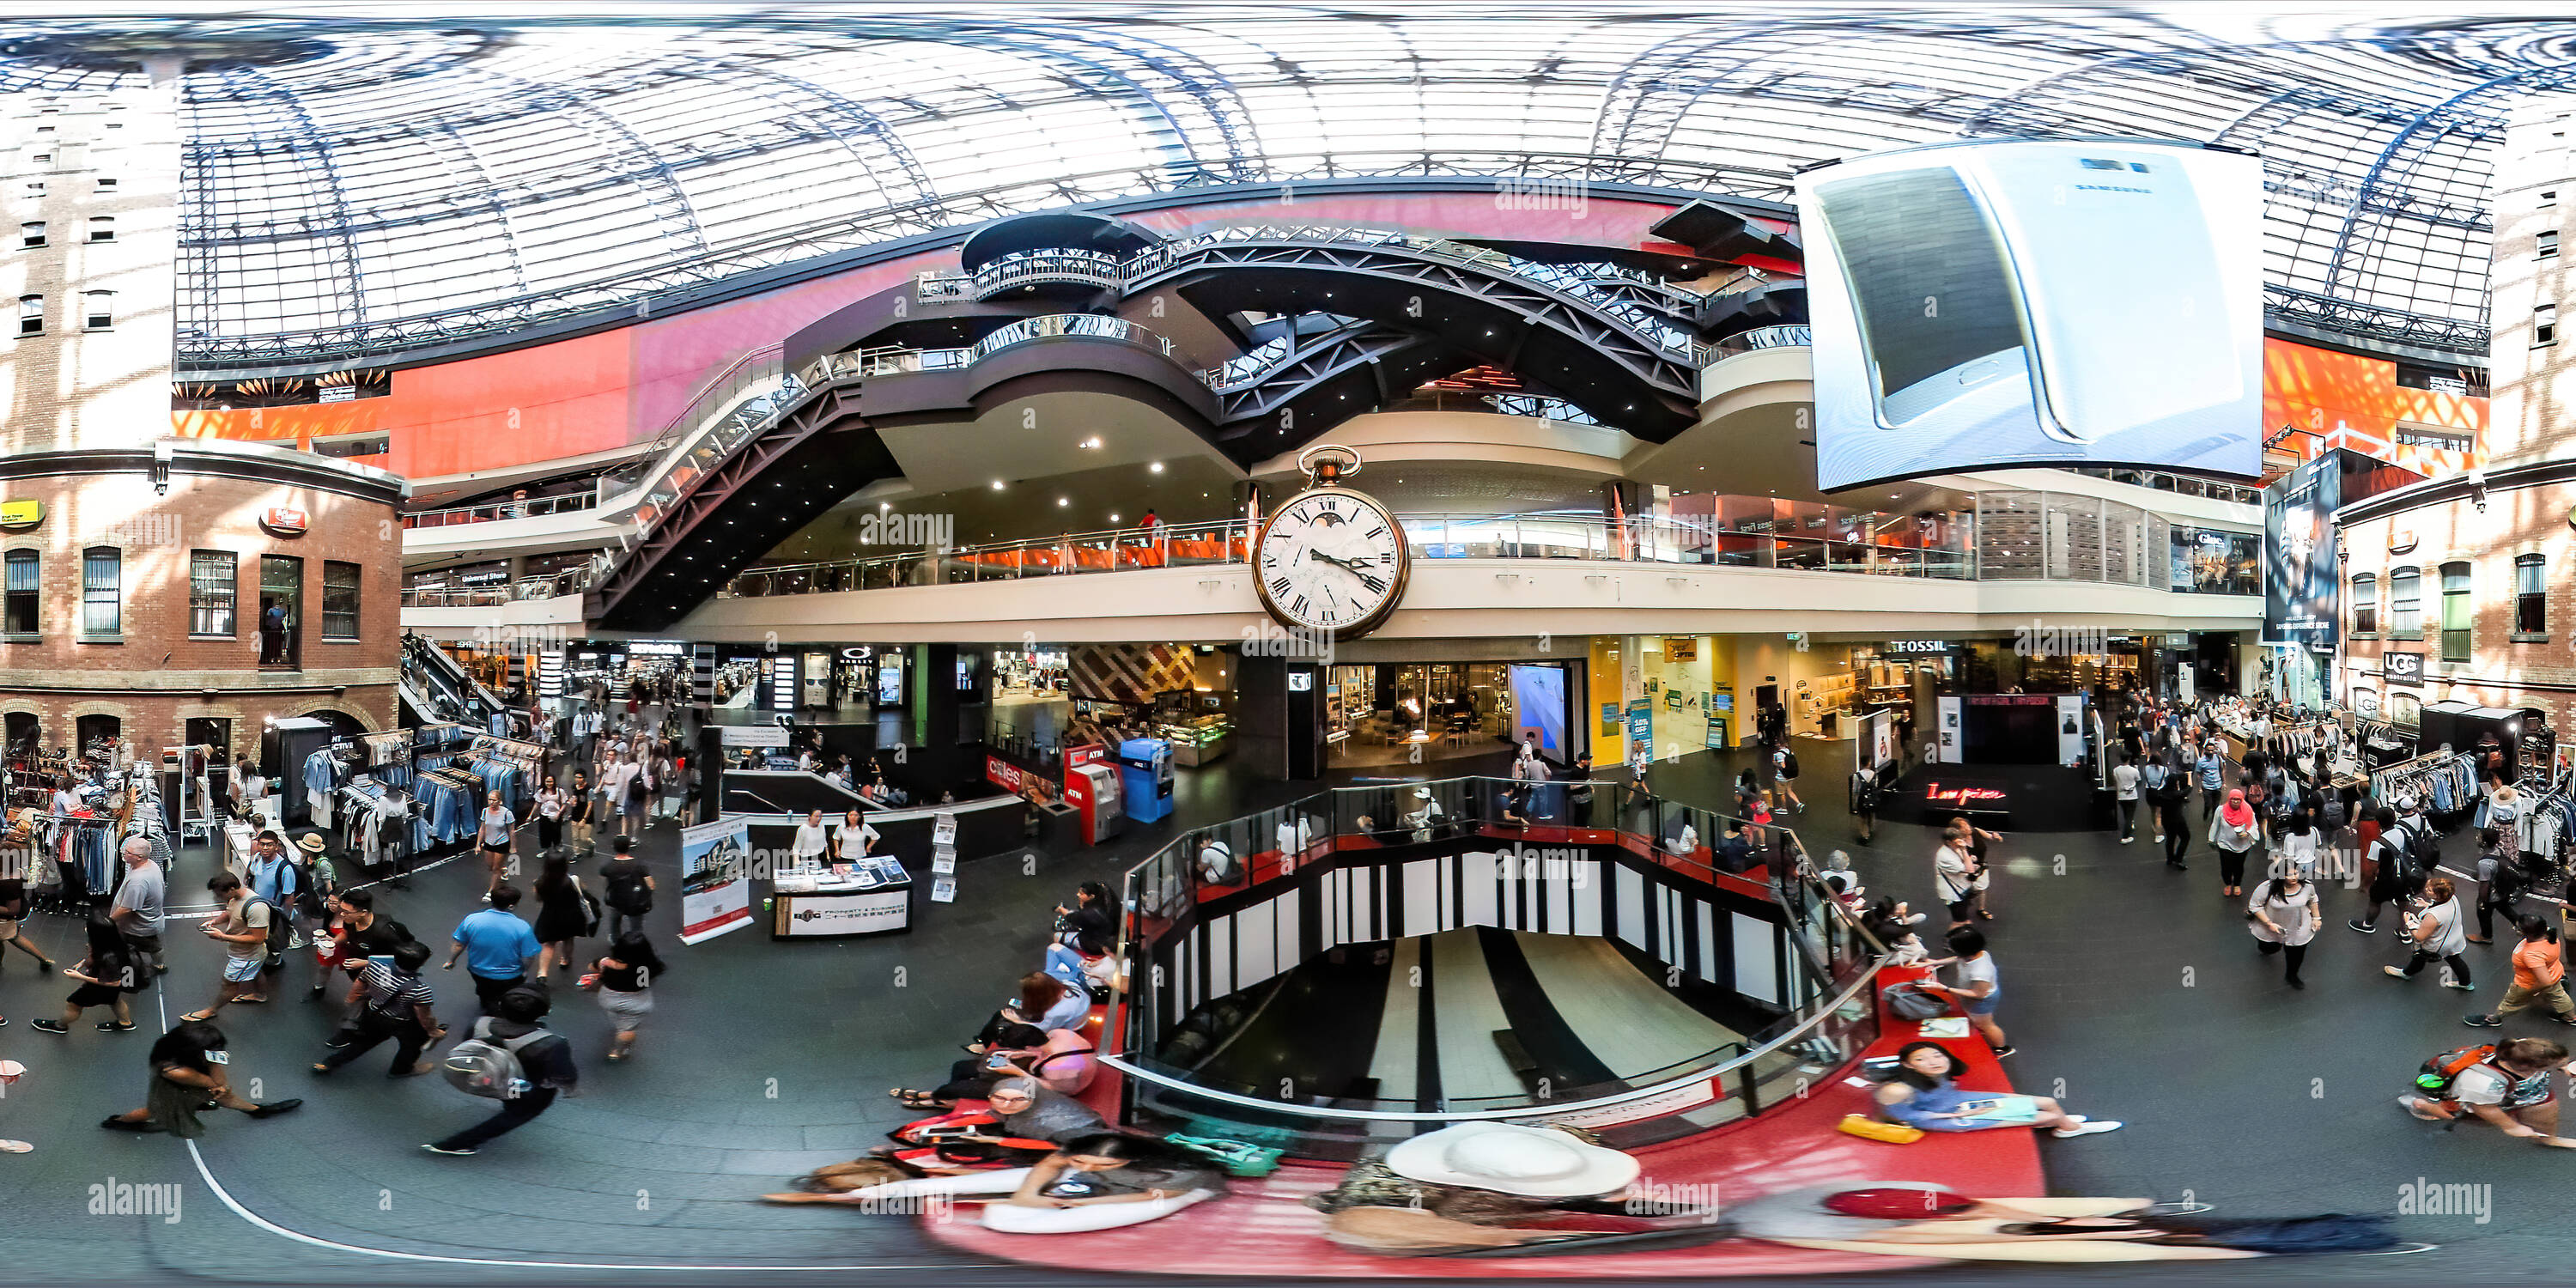 360 Grad Panorama Ansicht von Melbourne Central Station Mall, Melbourne, Australien